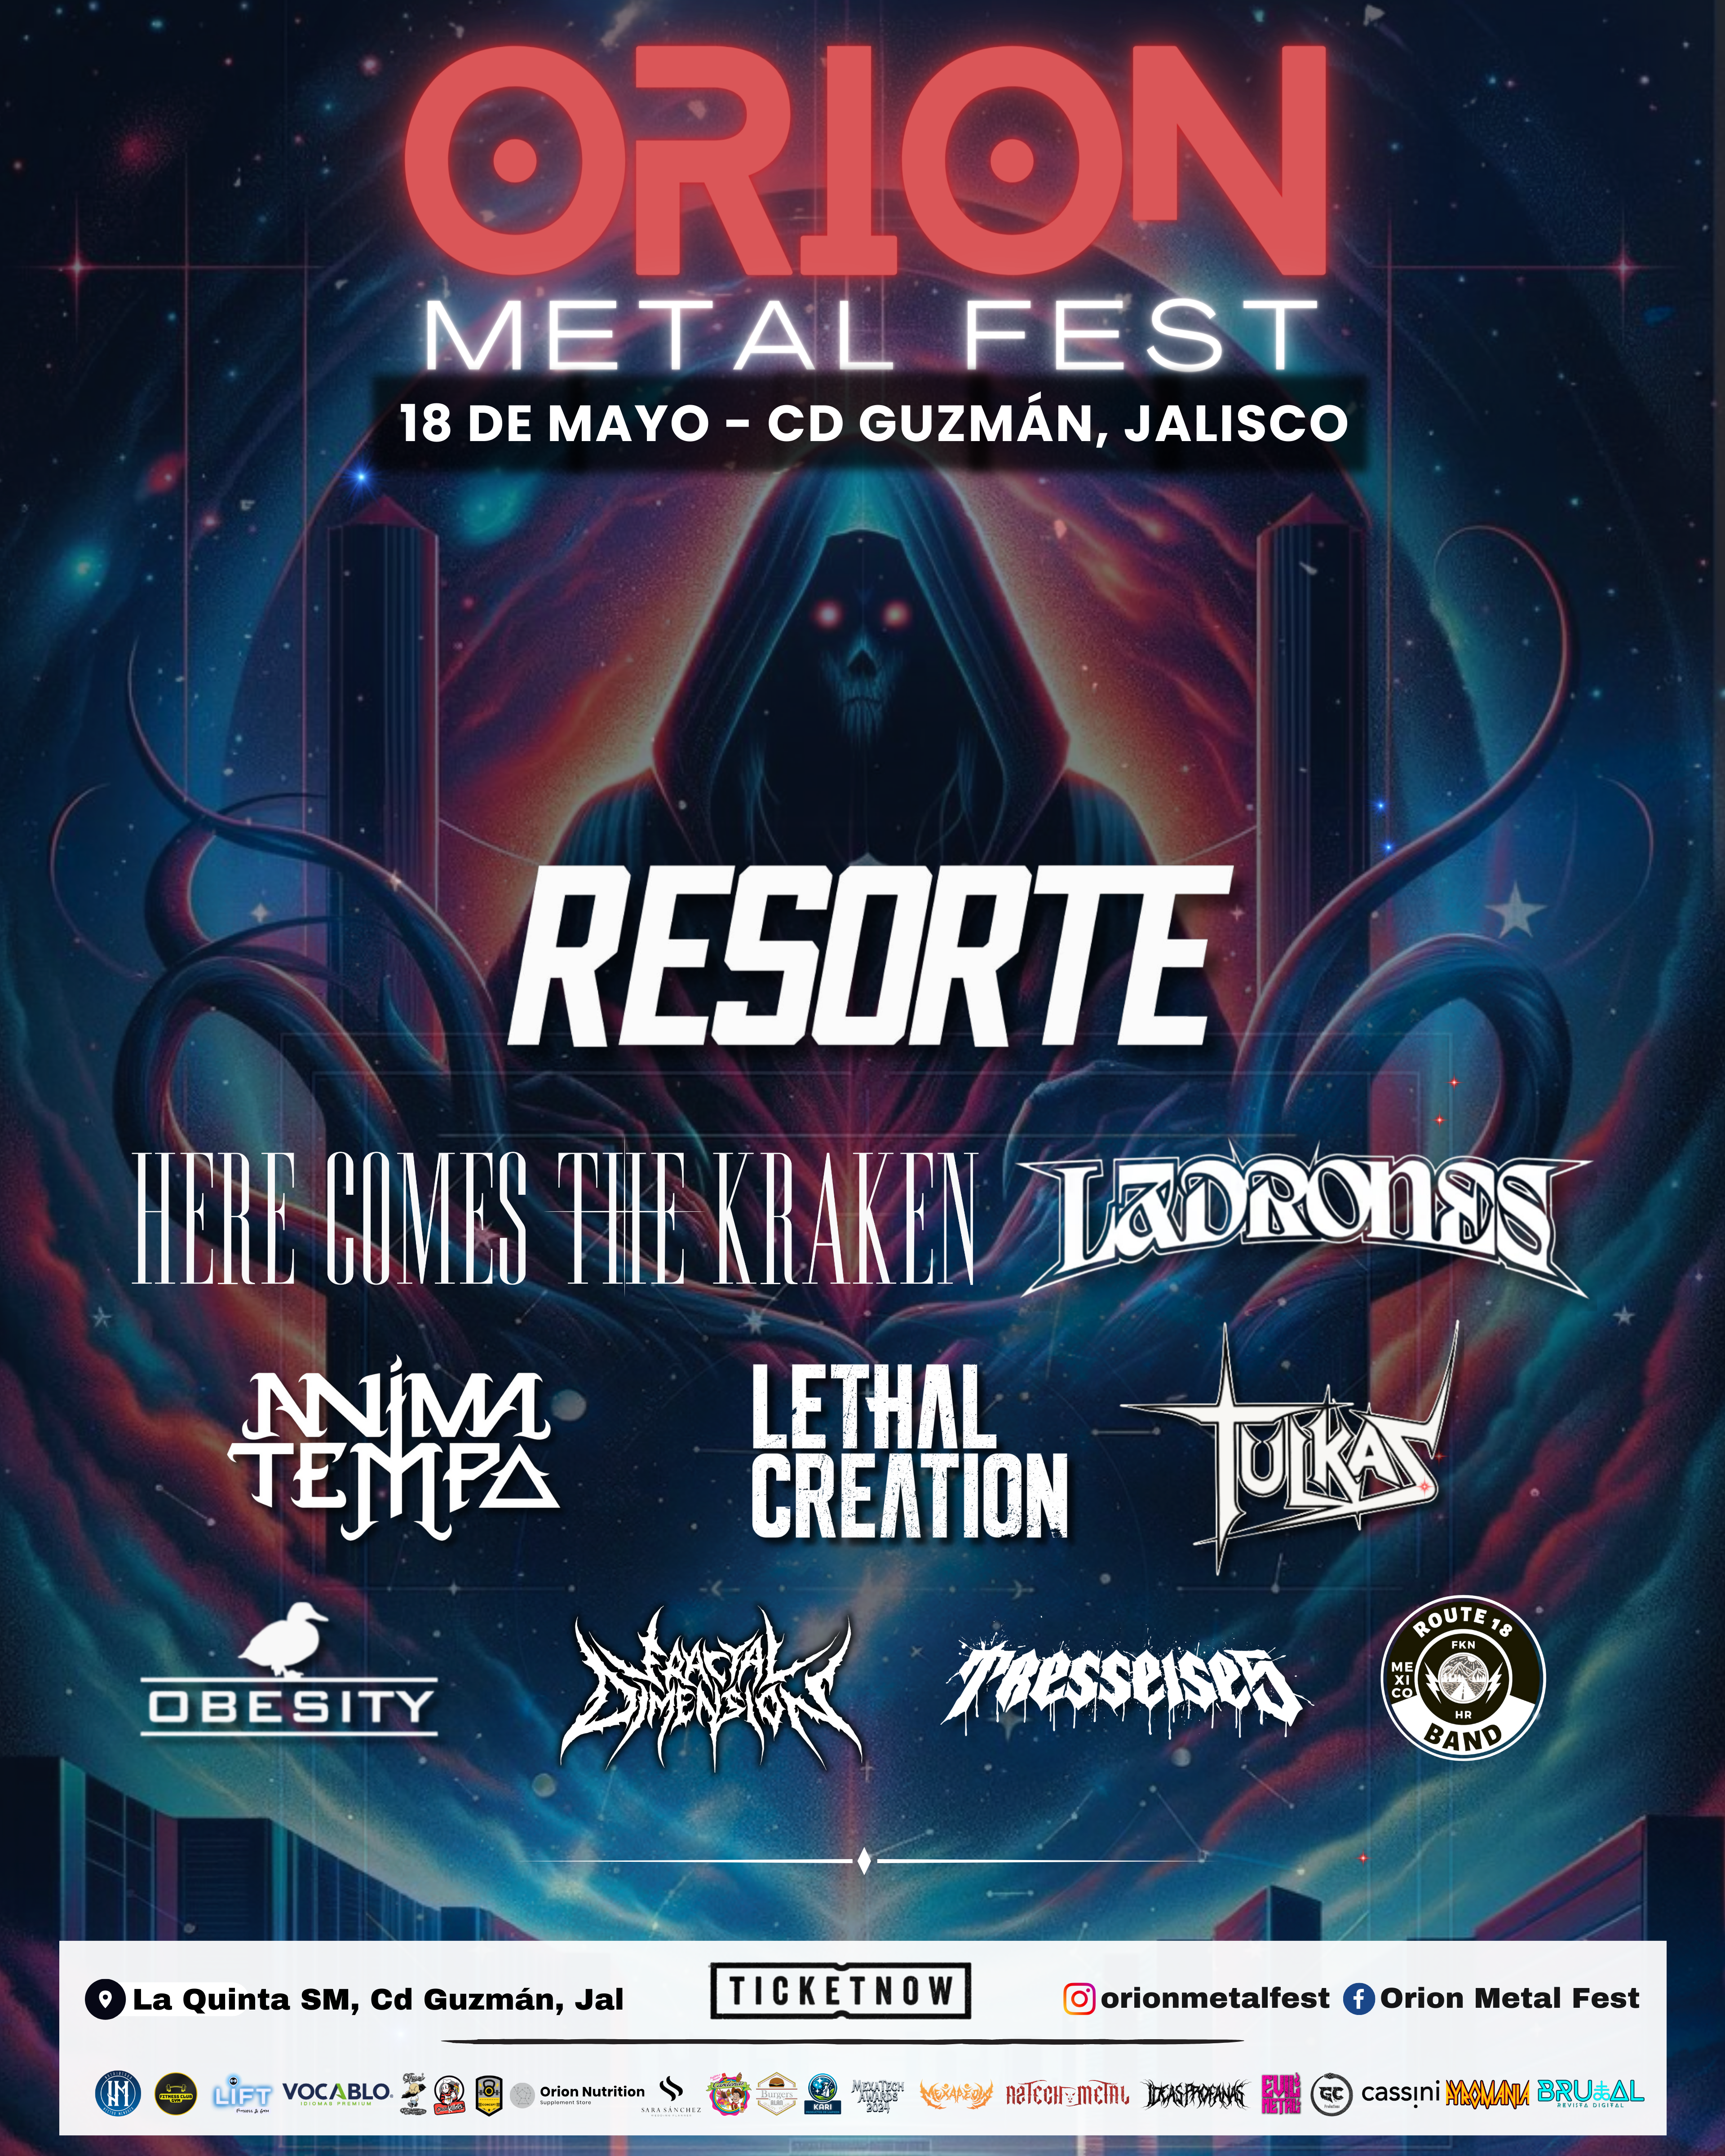 Orion Metal Fest un festival orgullosamente mexicano